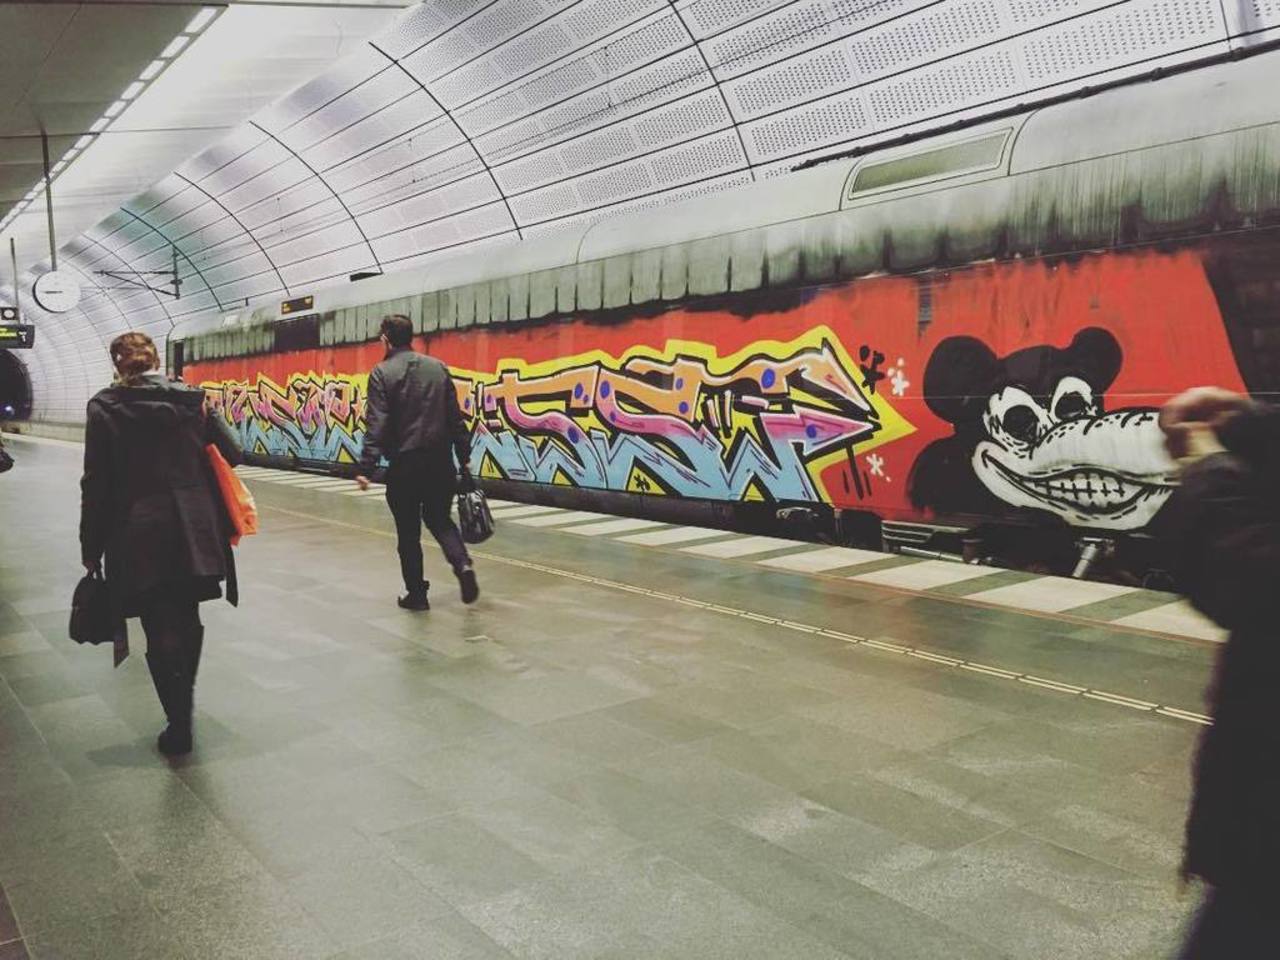 RT @artpushr: via #hnrkhlndr "http://ift.tt/1KHlxV5" #graffiti #streetart http://t.co/OOViMB0Onp